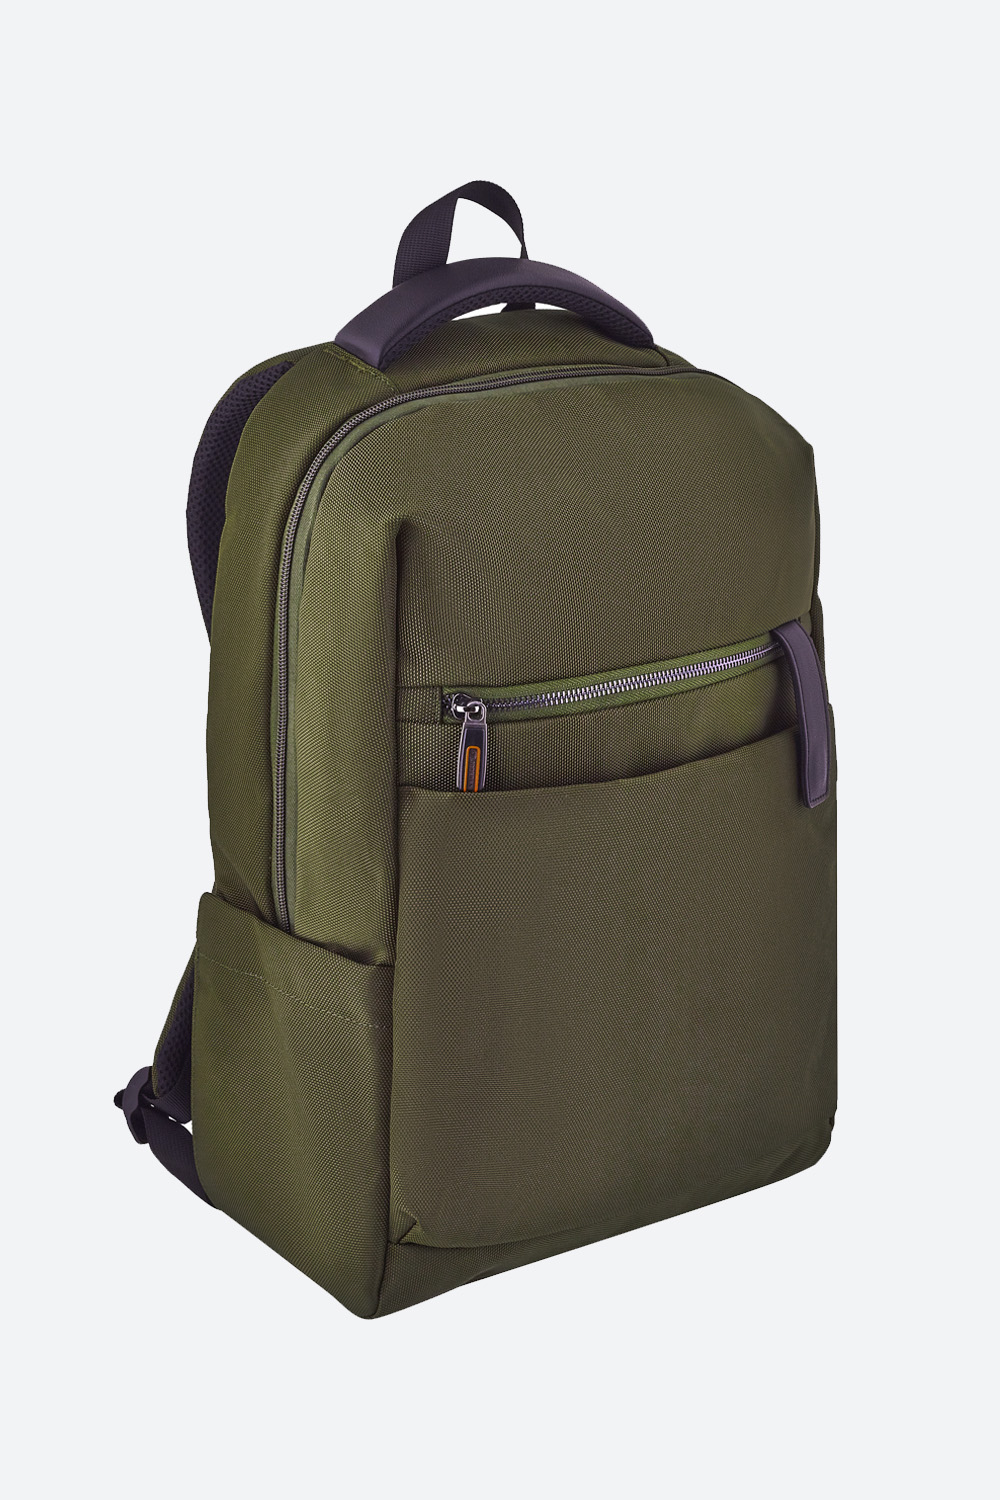 Рюкзак с потайным карманом и магнитной застежкой (SSBSB-225-19506-705) Silver Spoon